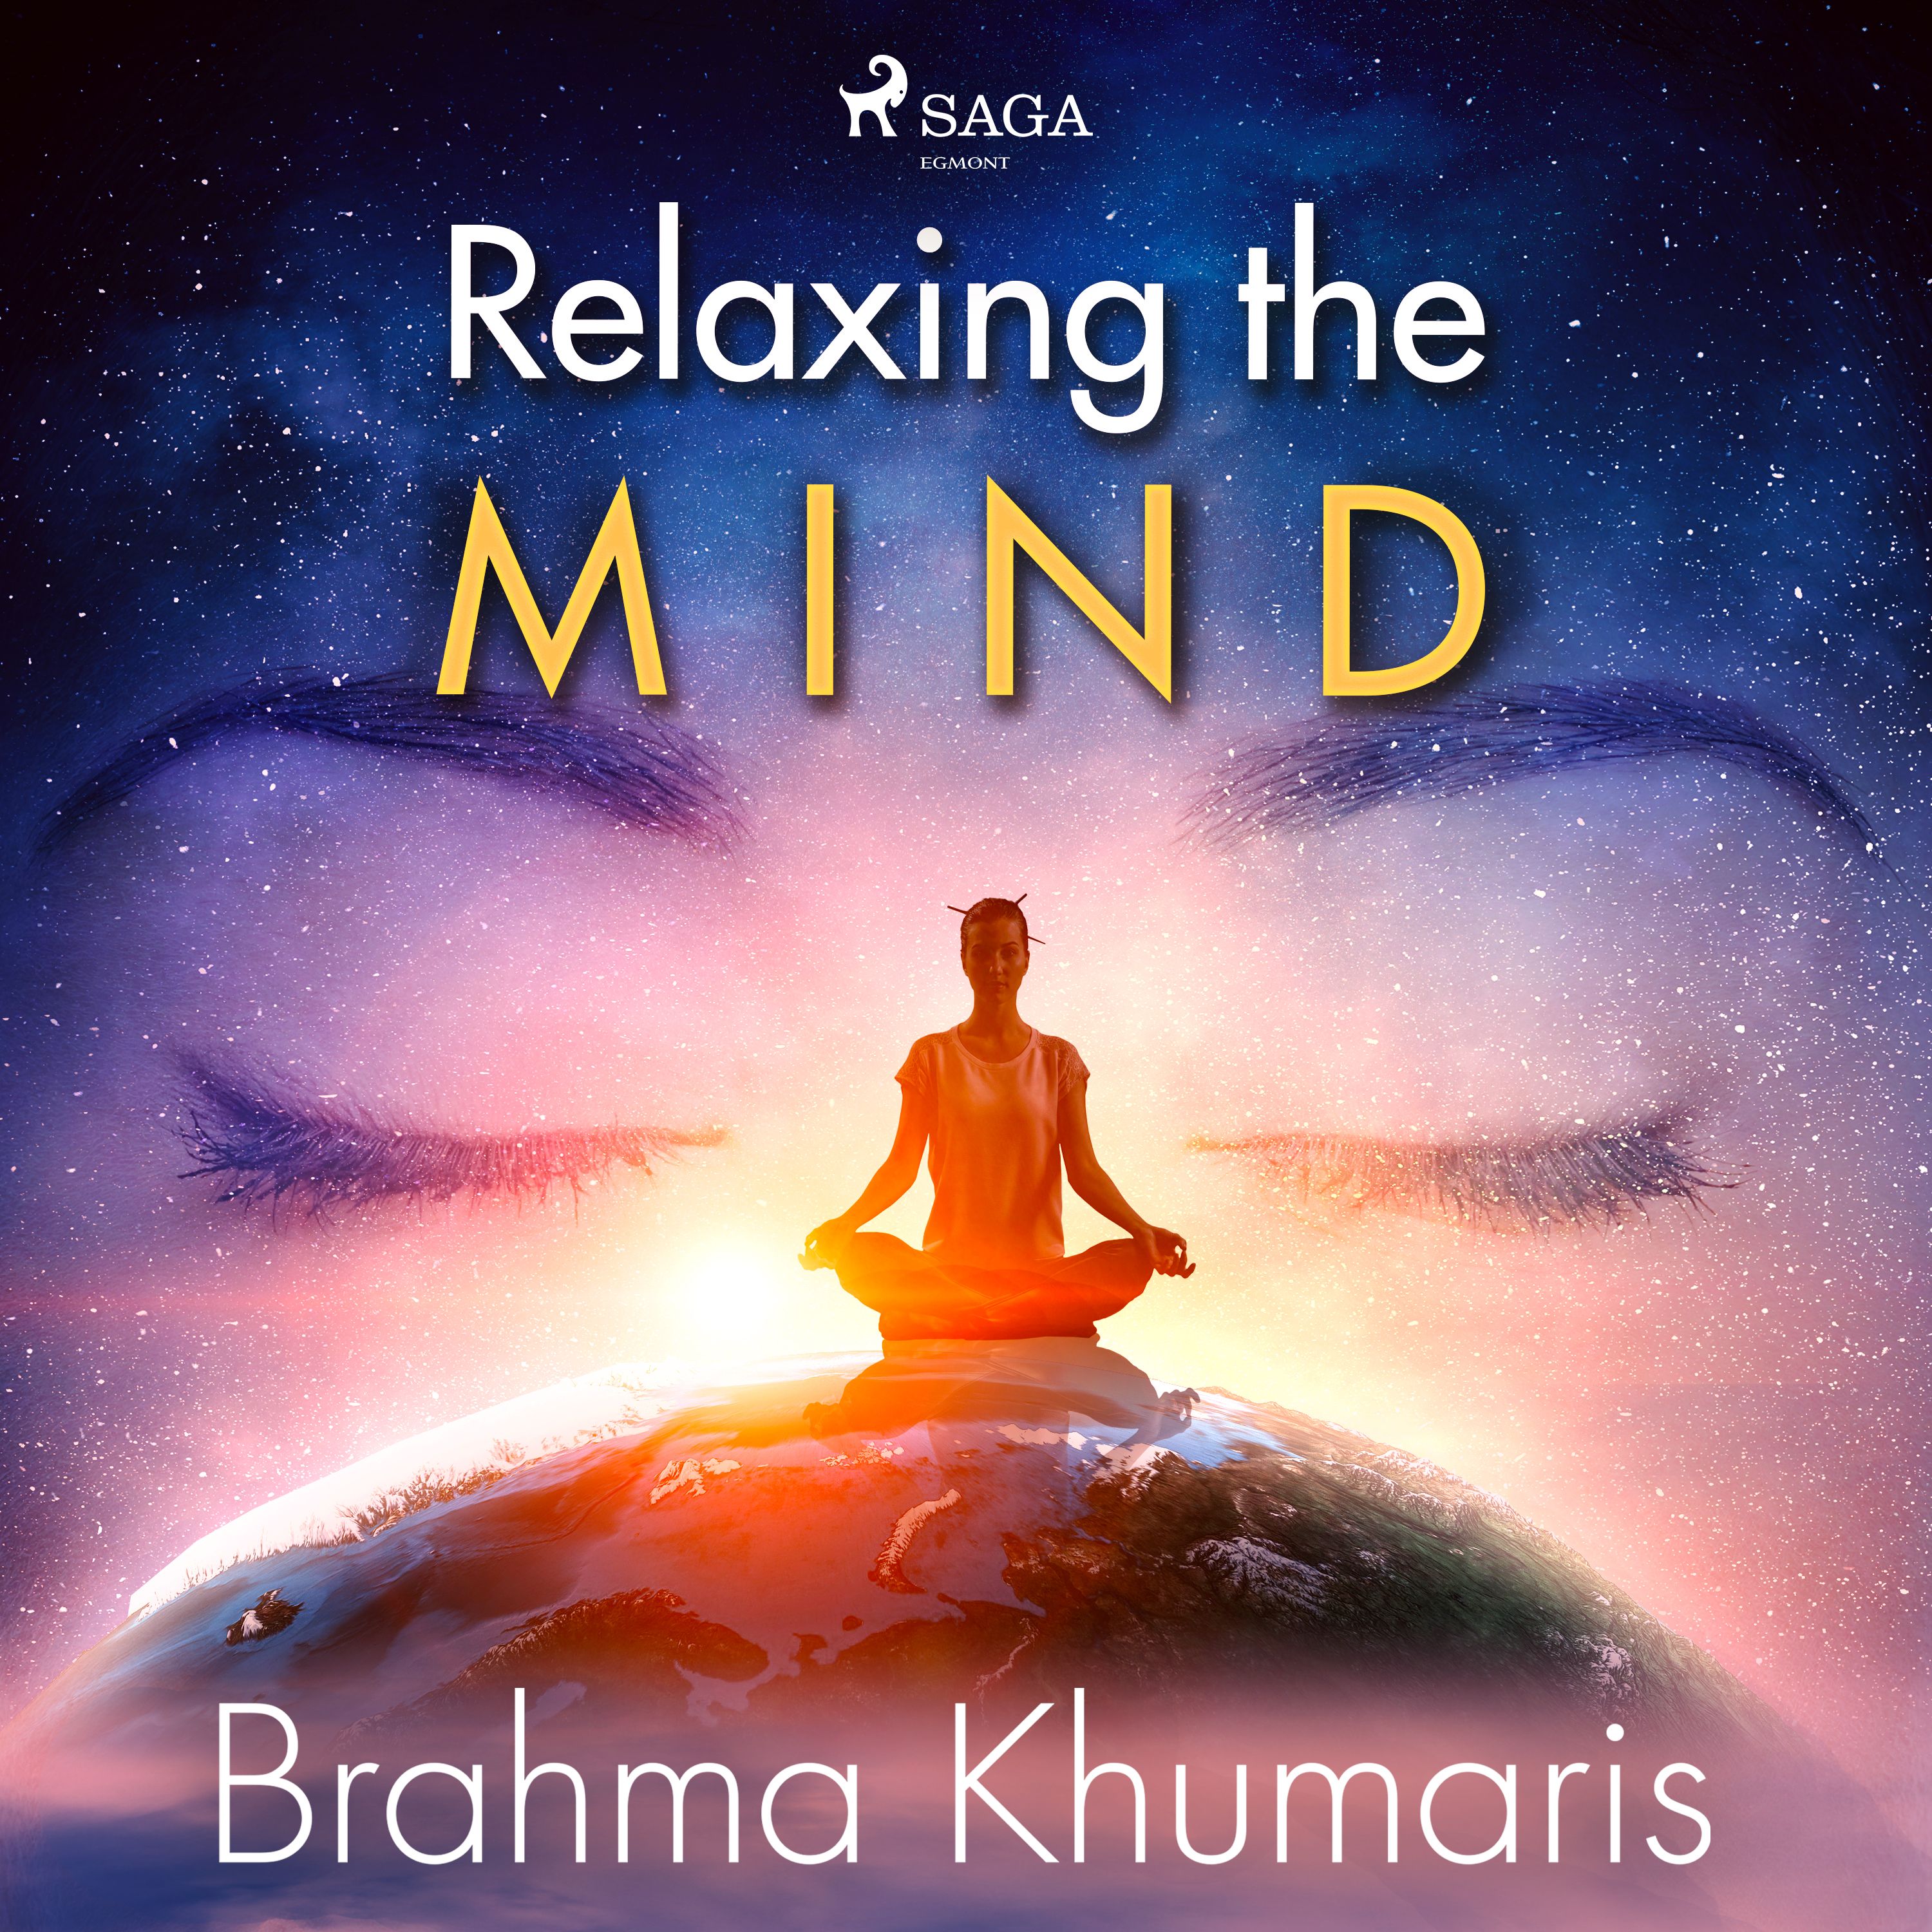 Relaxing the Mind, ljudbok av Brahma Khumaris